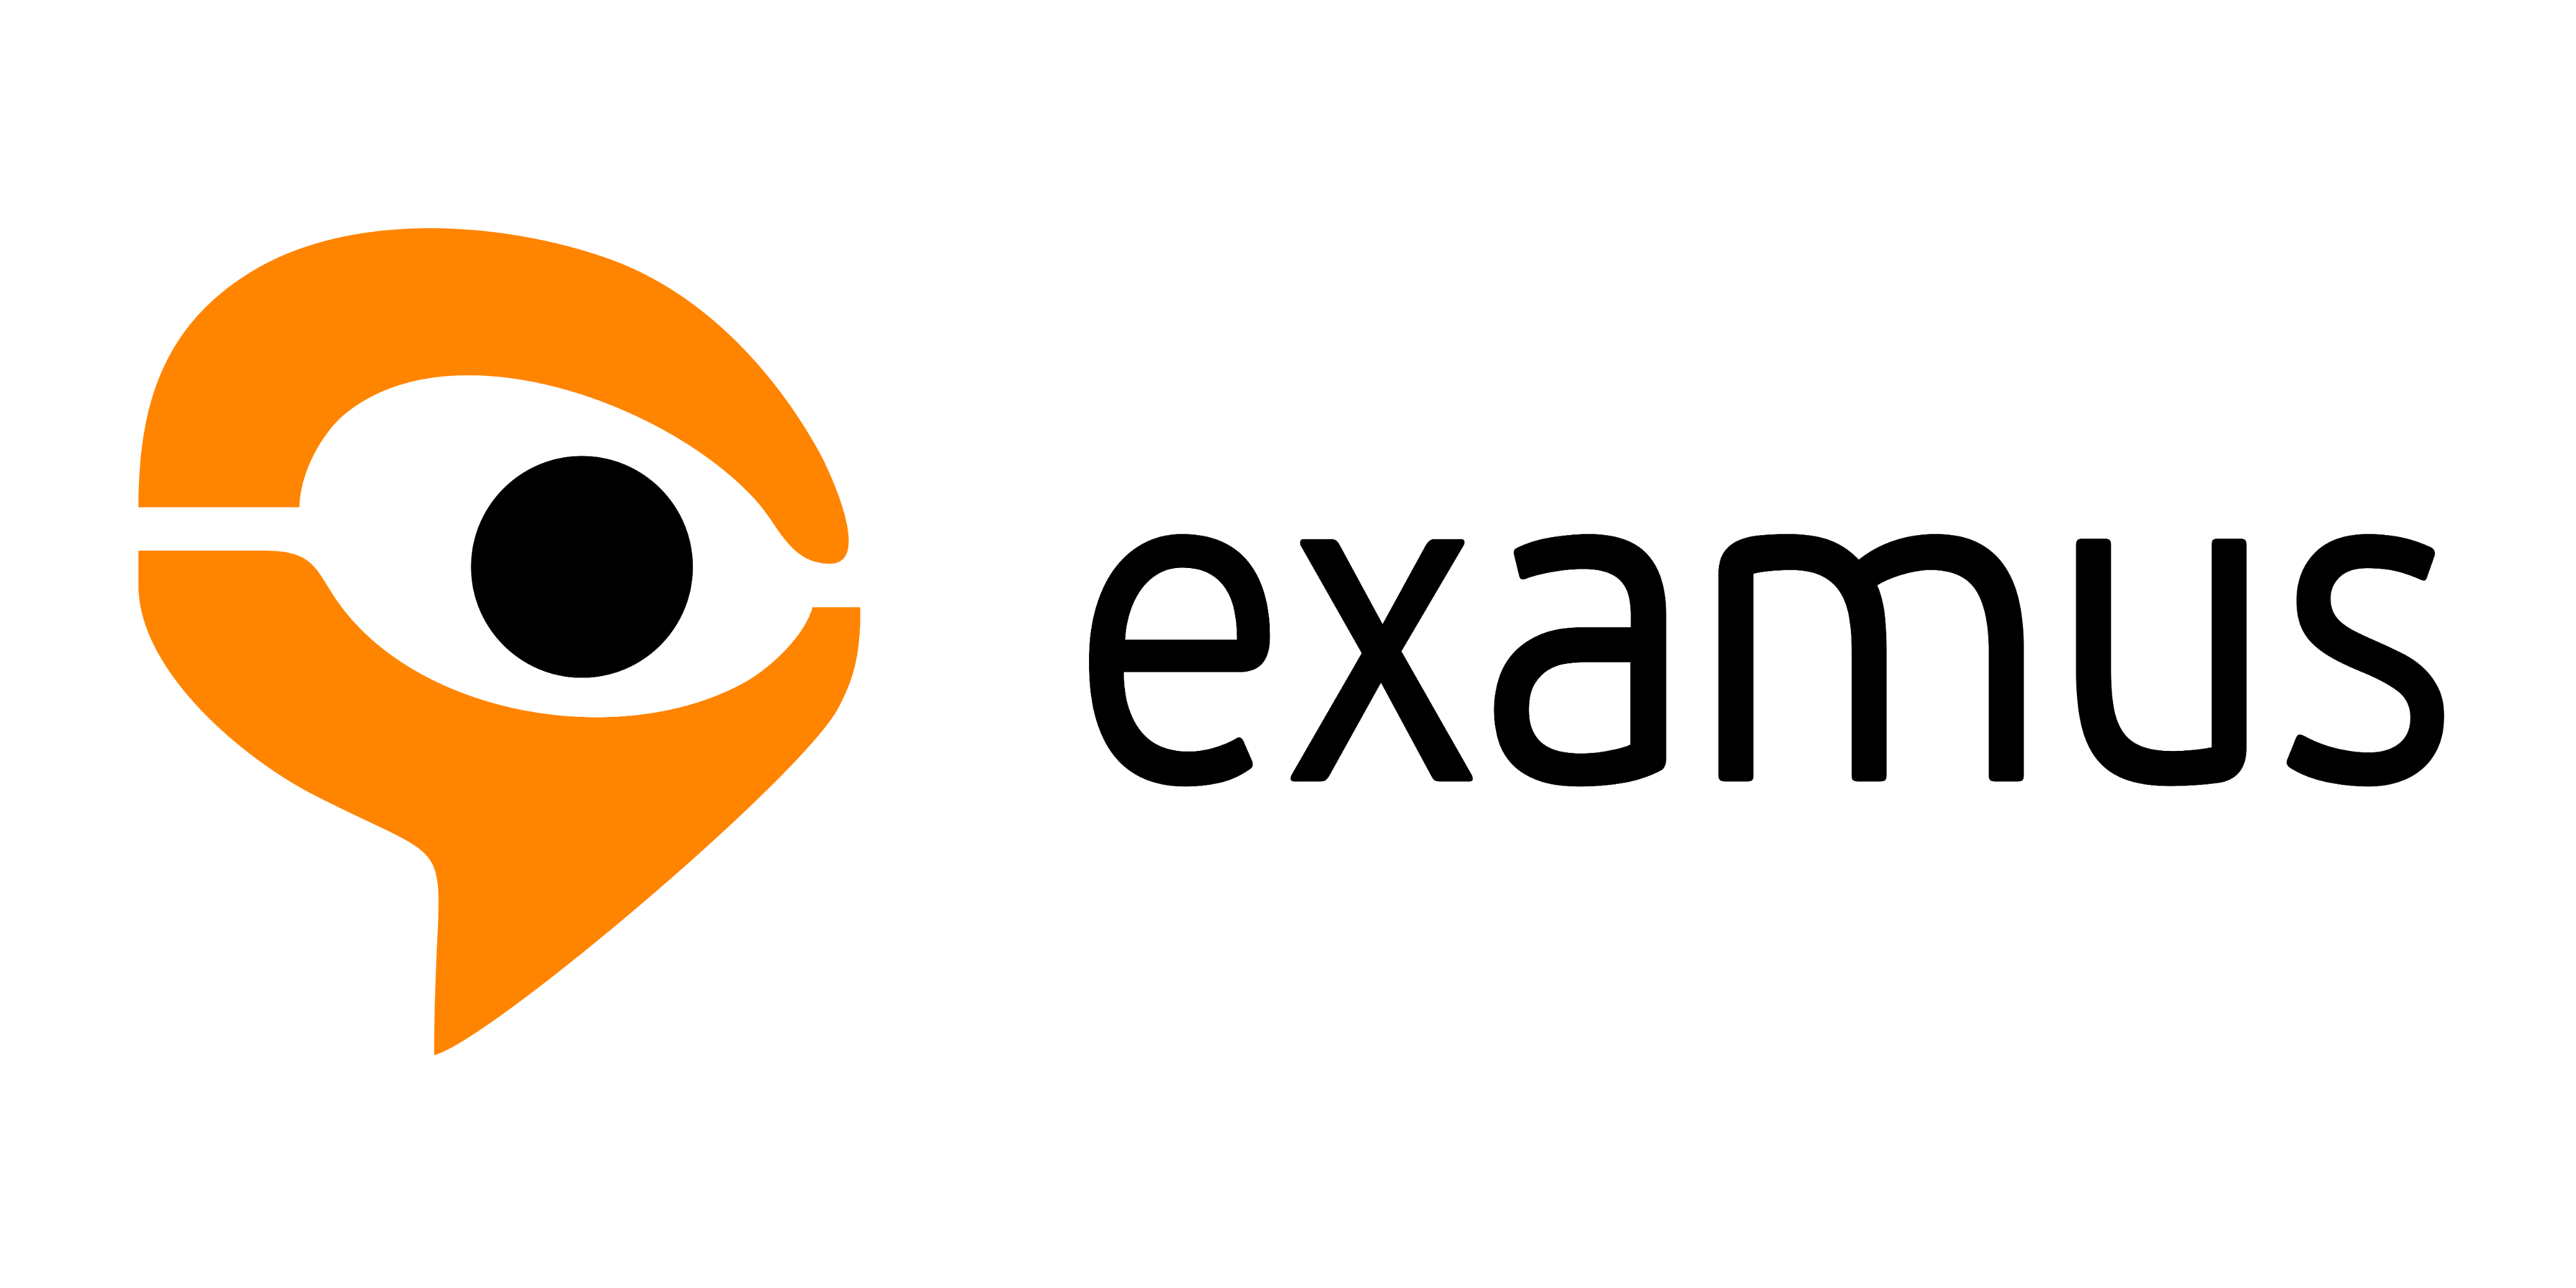 Course Image {mlang lv}Examus Testēšanas Kurss{mlang}{mlang other}Examus Testing Course{mlang}